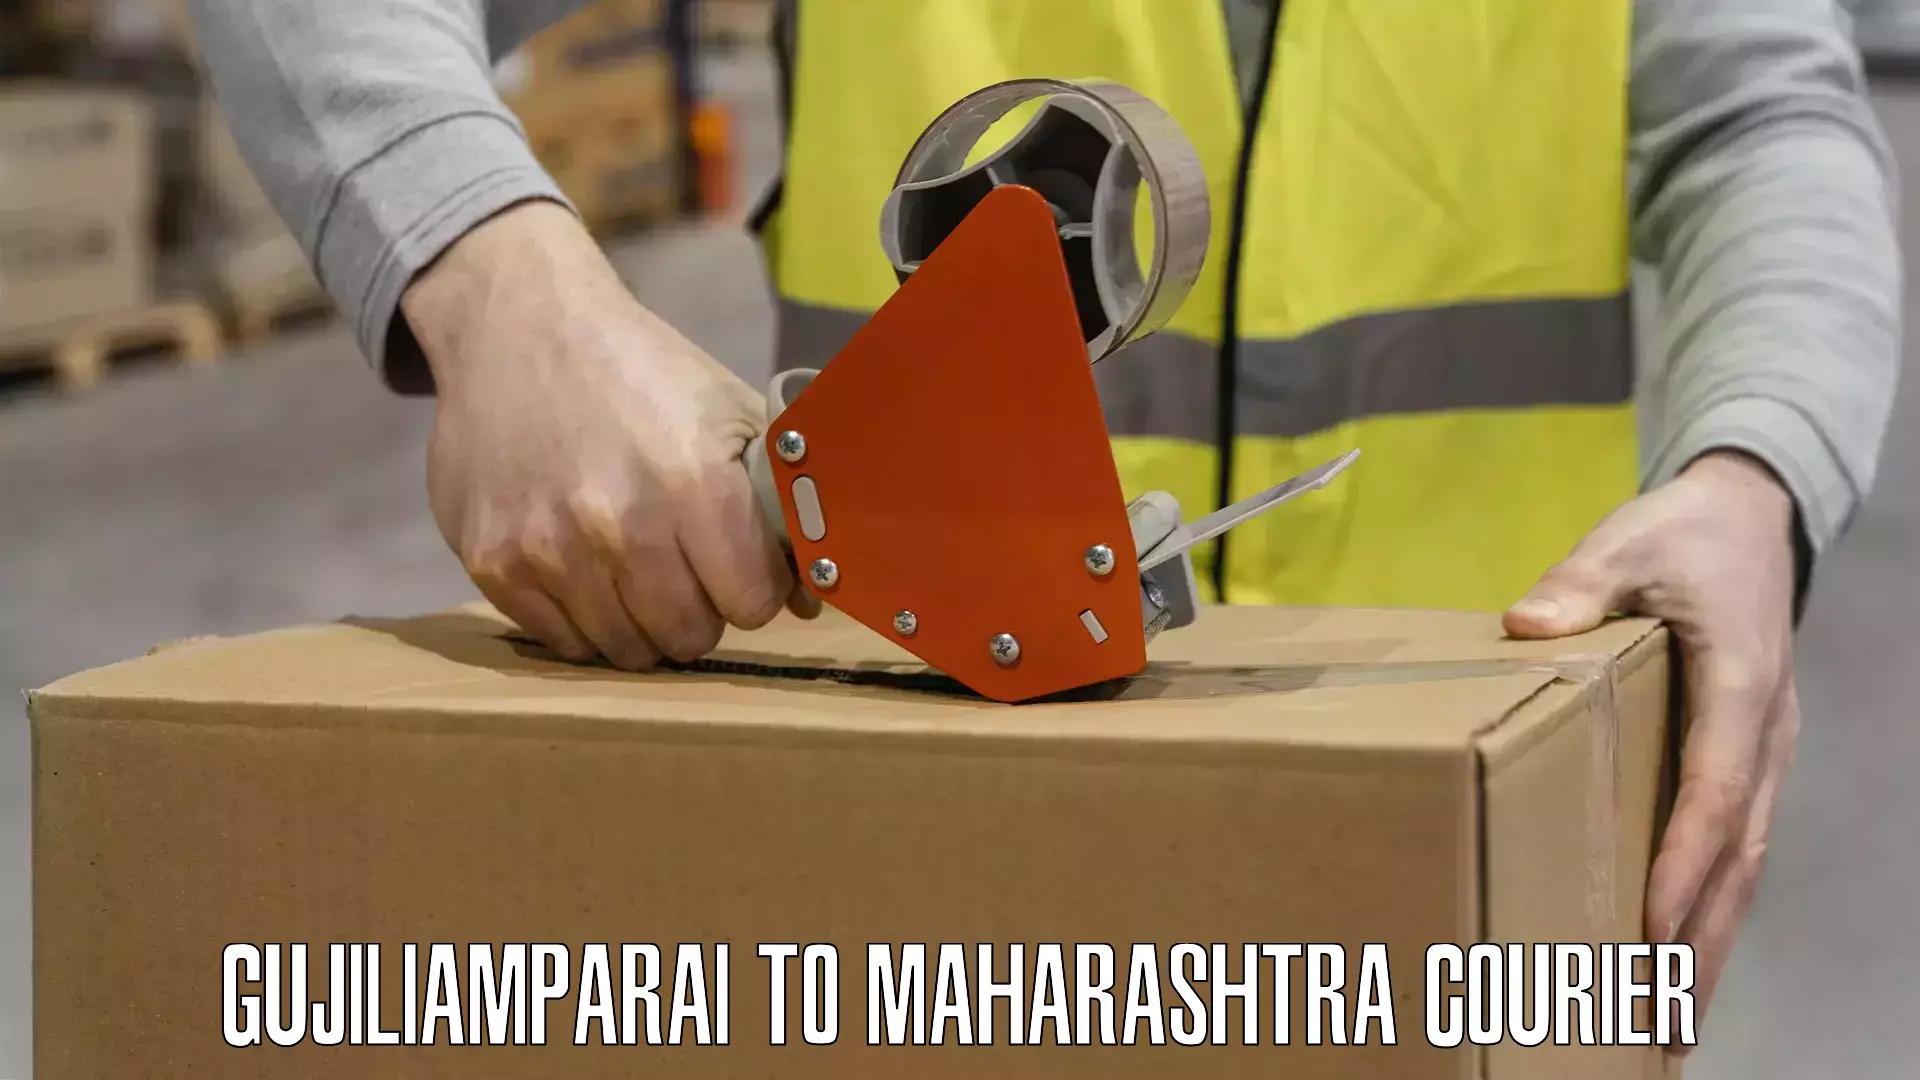 Multi-service courier options Gujiliamparai to Maharashtra